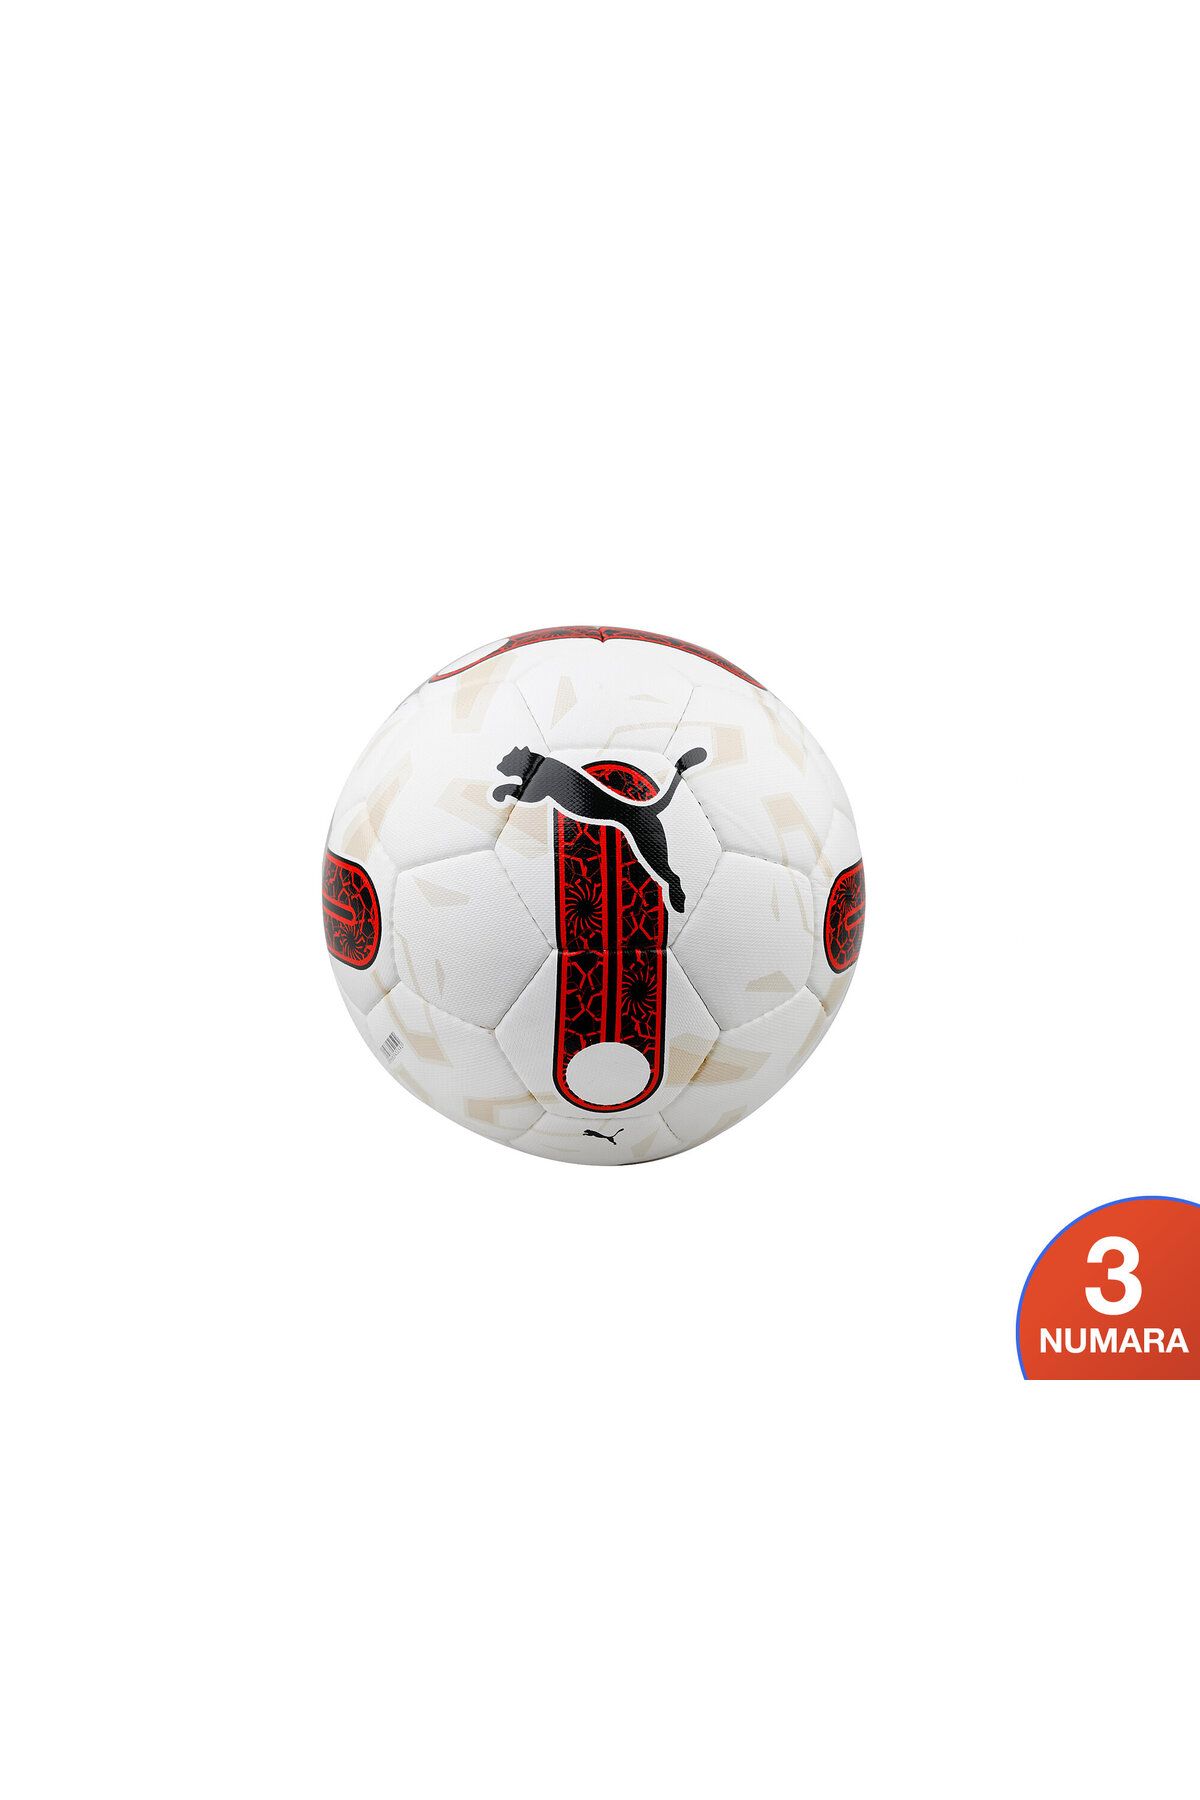 Puma Orbita Süper Lig 5 Hs Futbol Topu 08419701-3 Beyaz